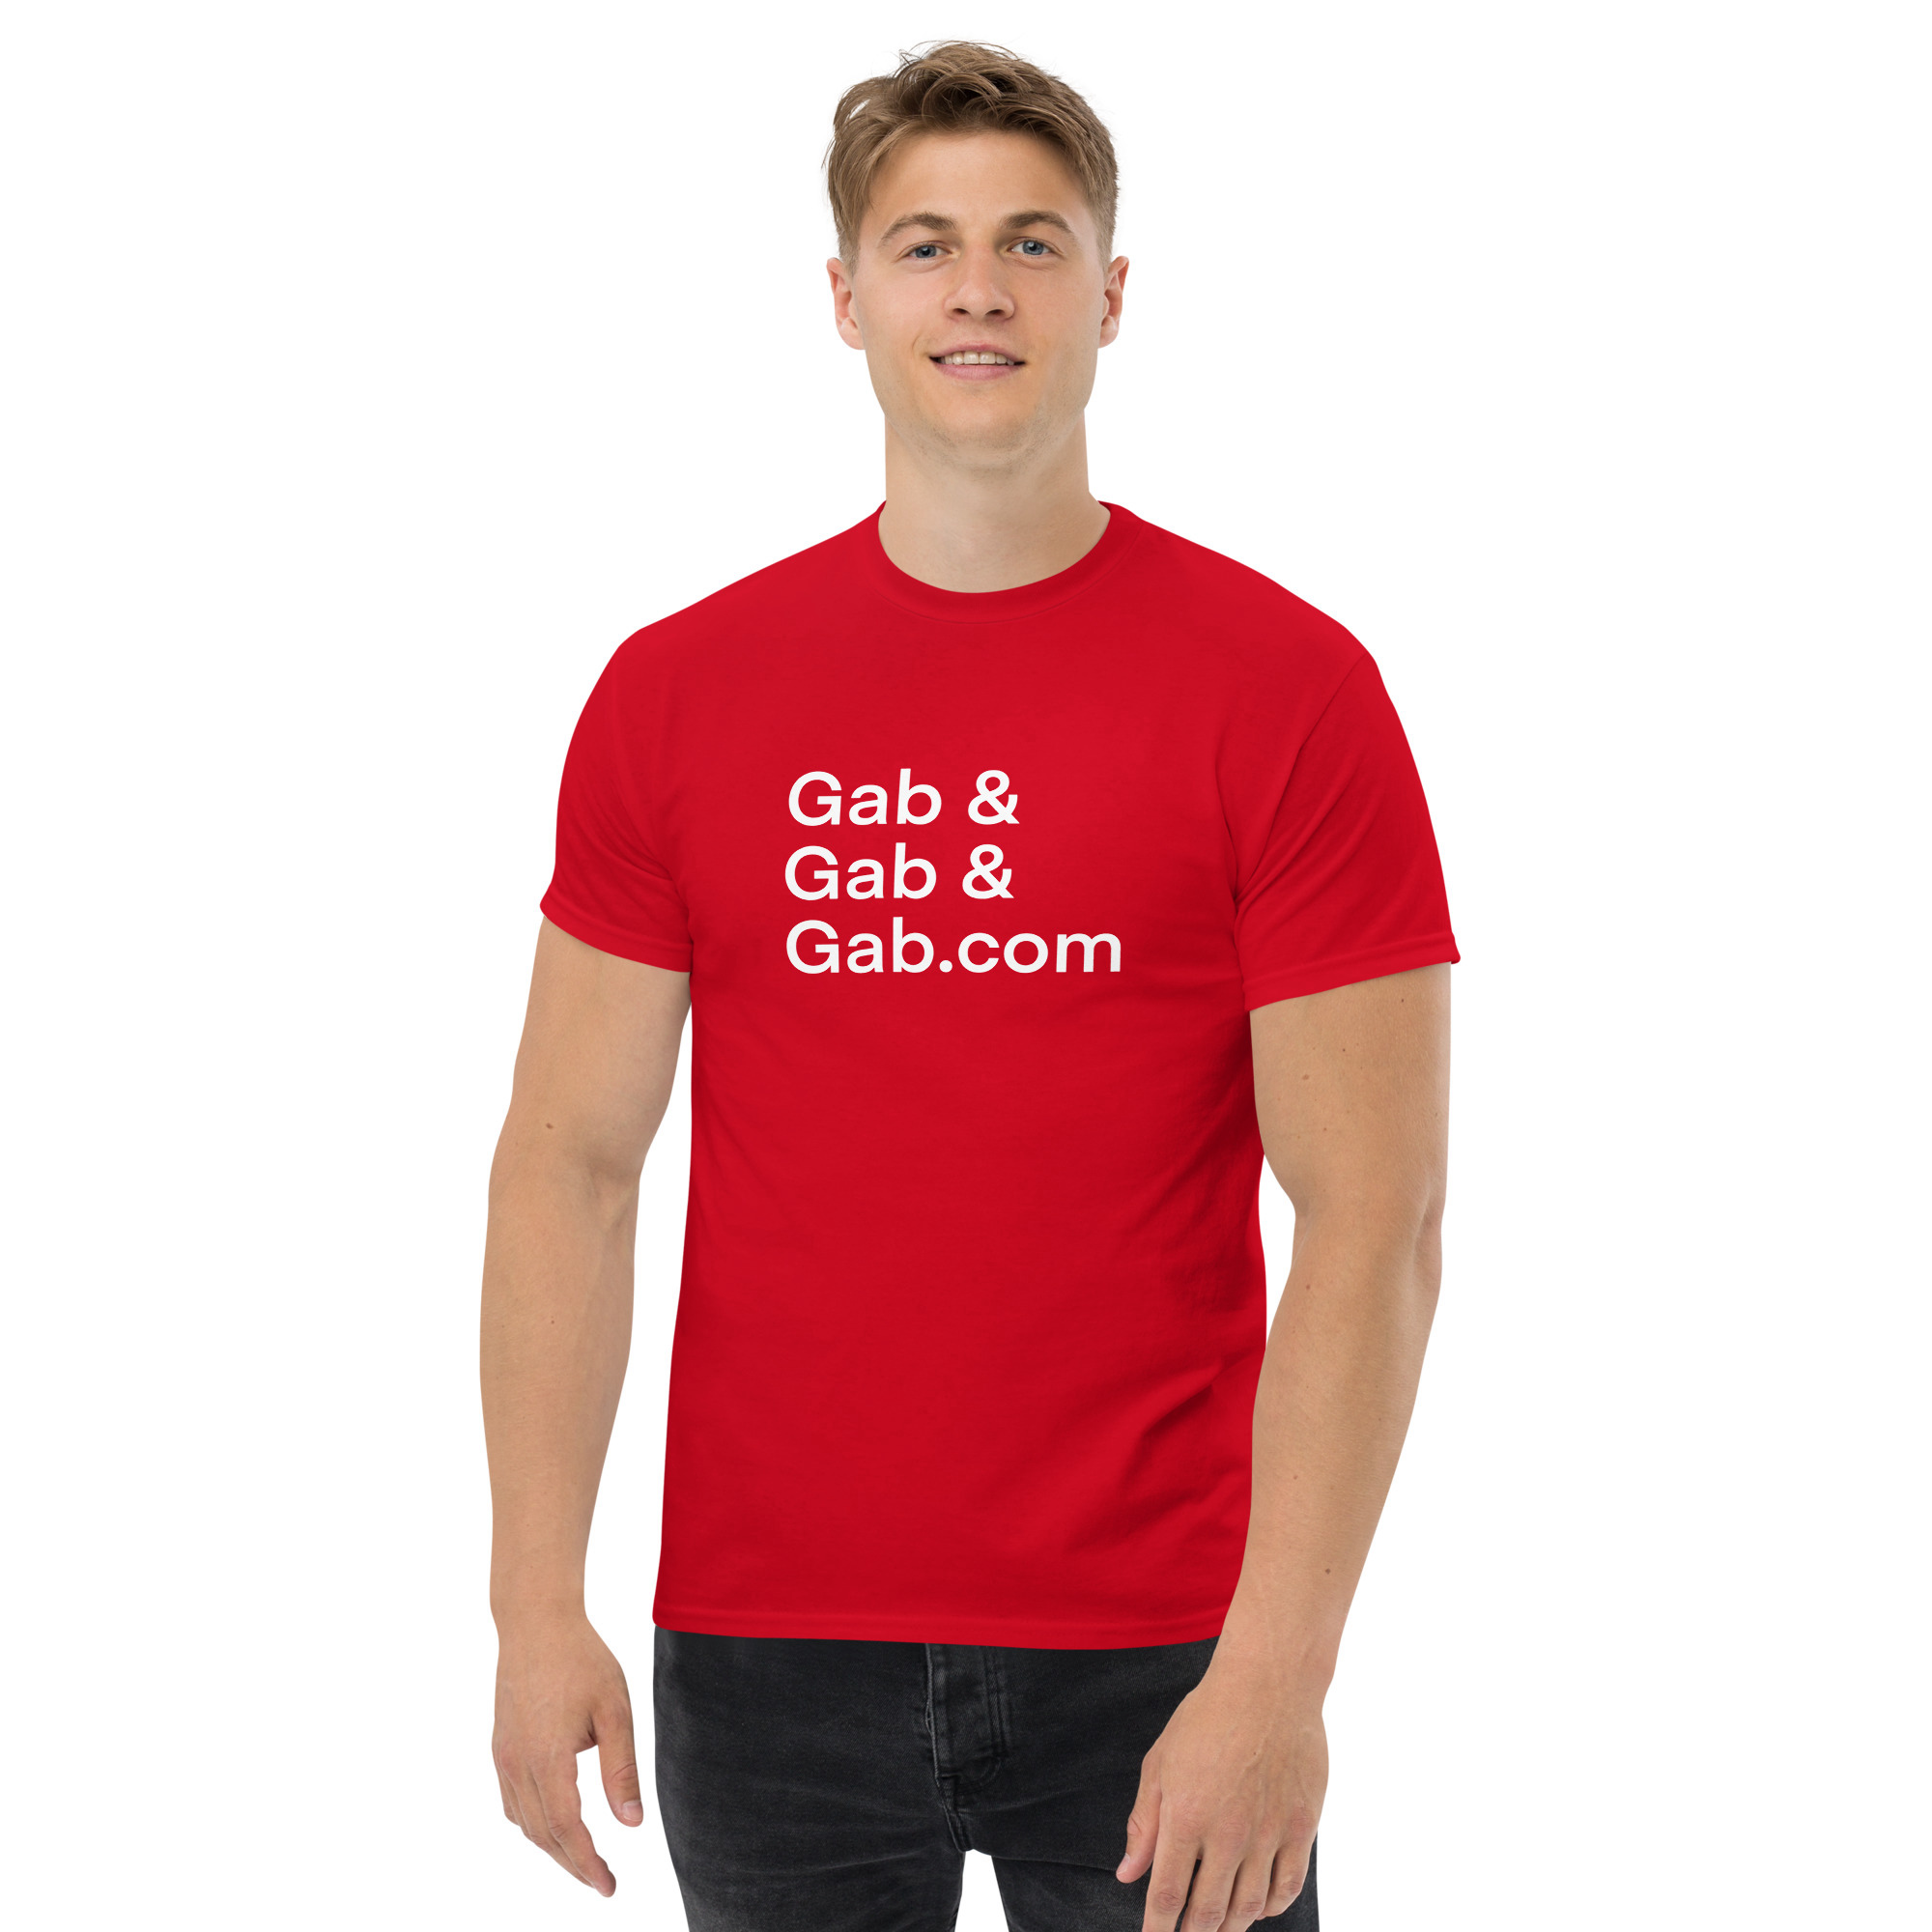 Gab, & Gab, & Gab.com T-Shirt - Red / L